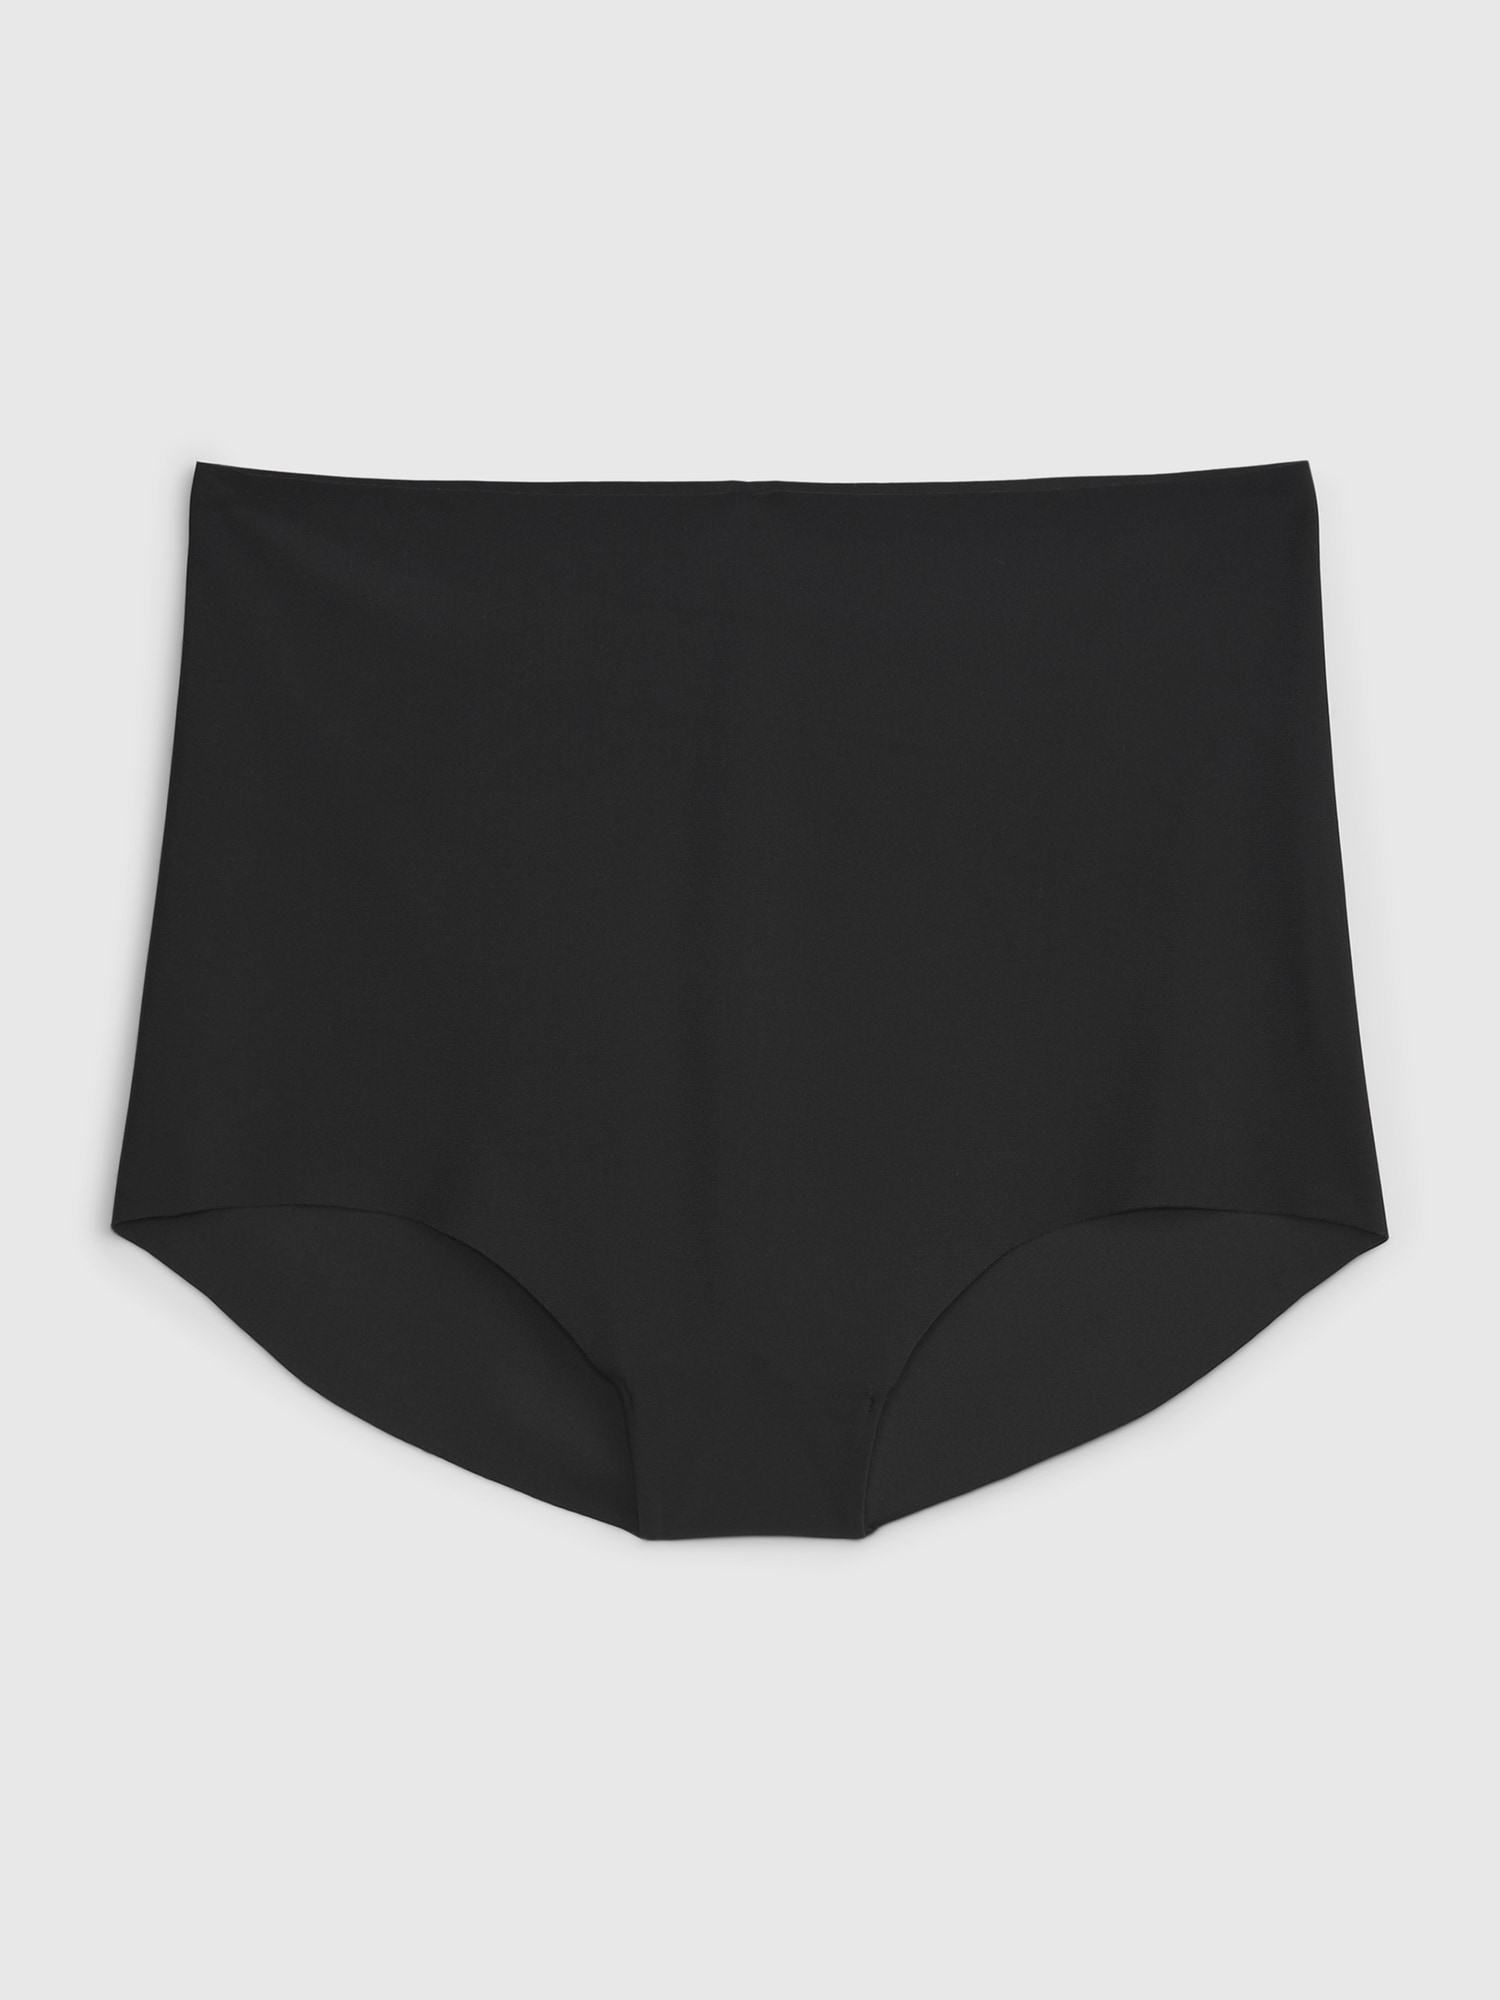 GNEPH Seamless Underwear Invisible Bikini No Show Nylon Spandex